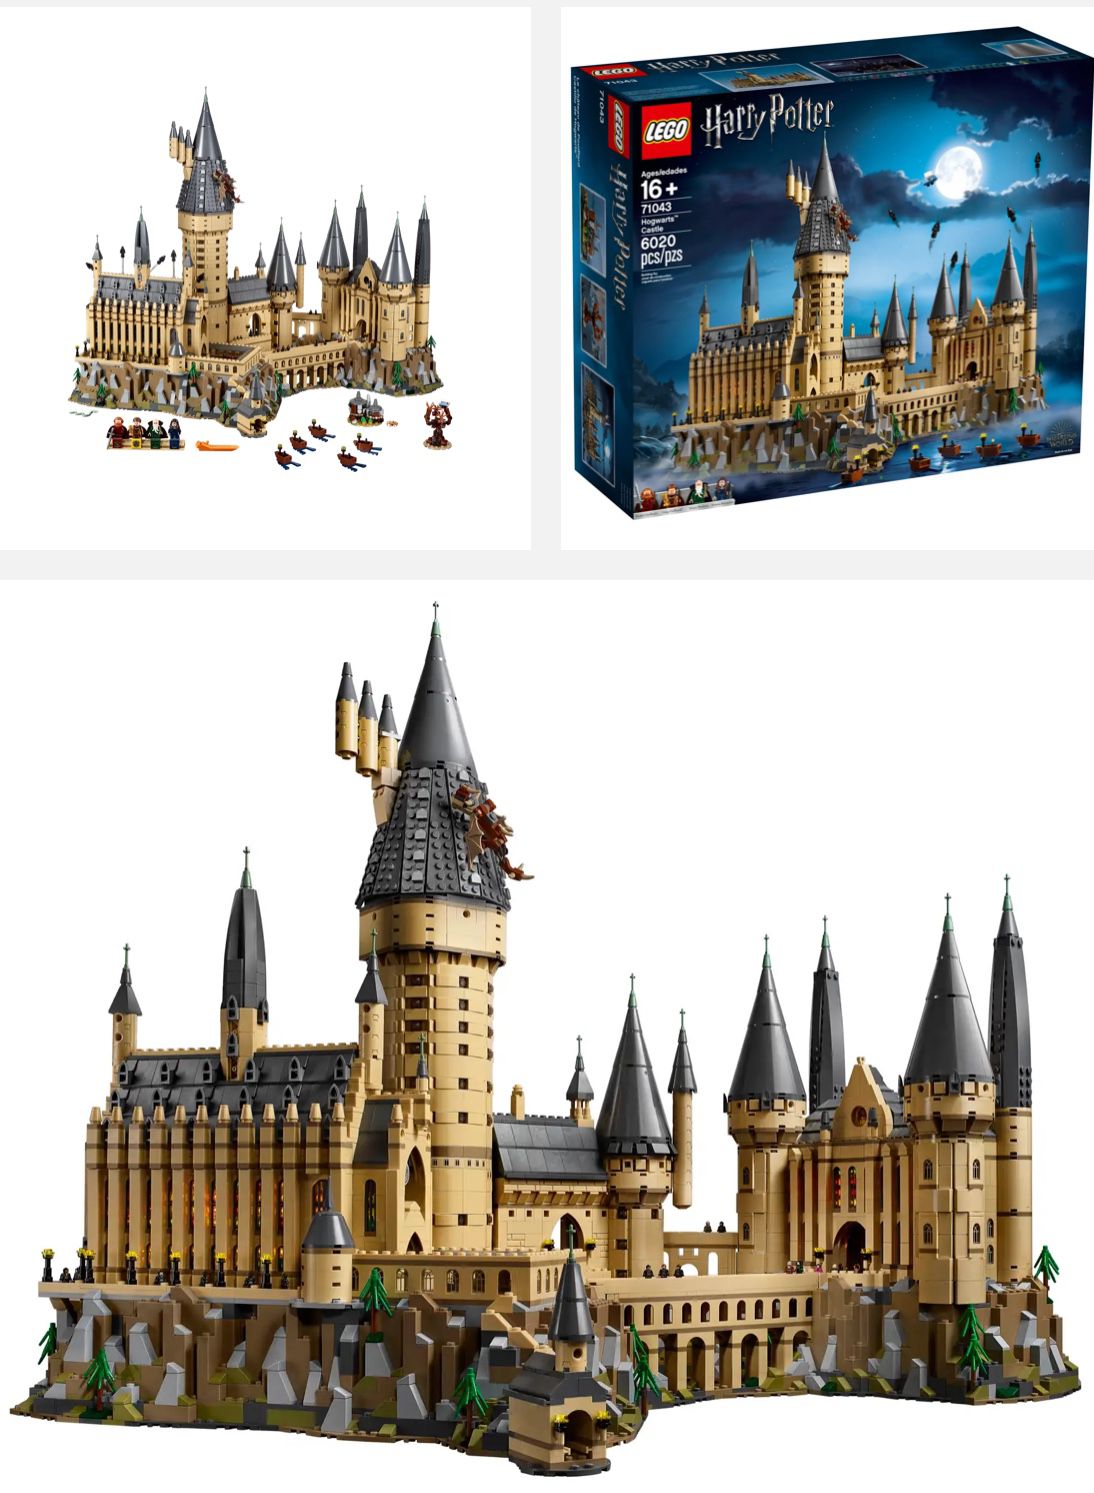 Harry Potter & Star Wars Lego Sets (5 Total)